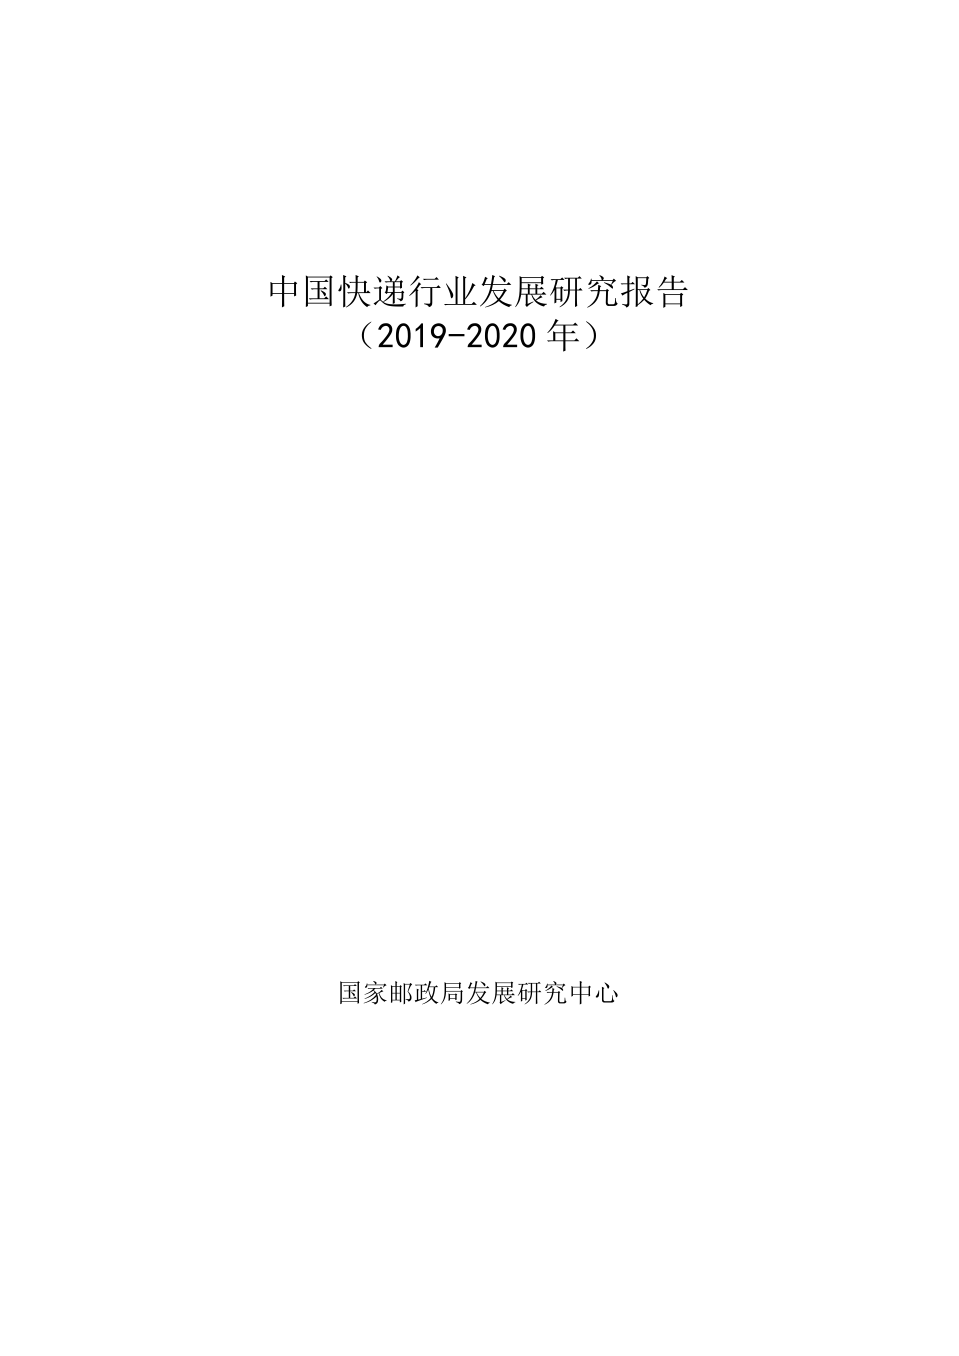 2019-2020年中国快递行业发展研究报告